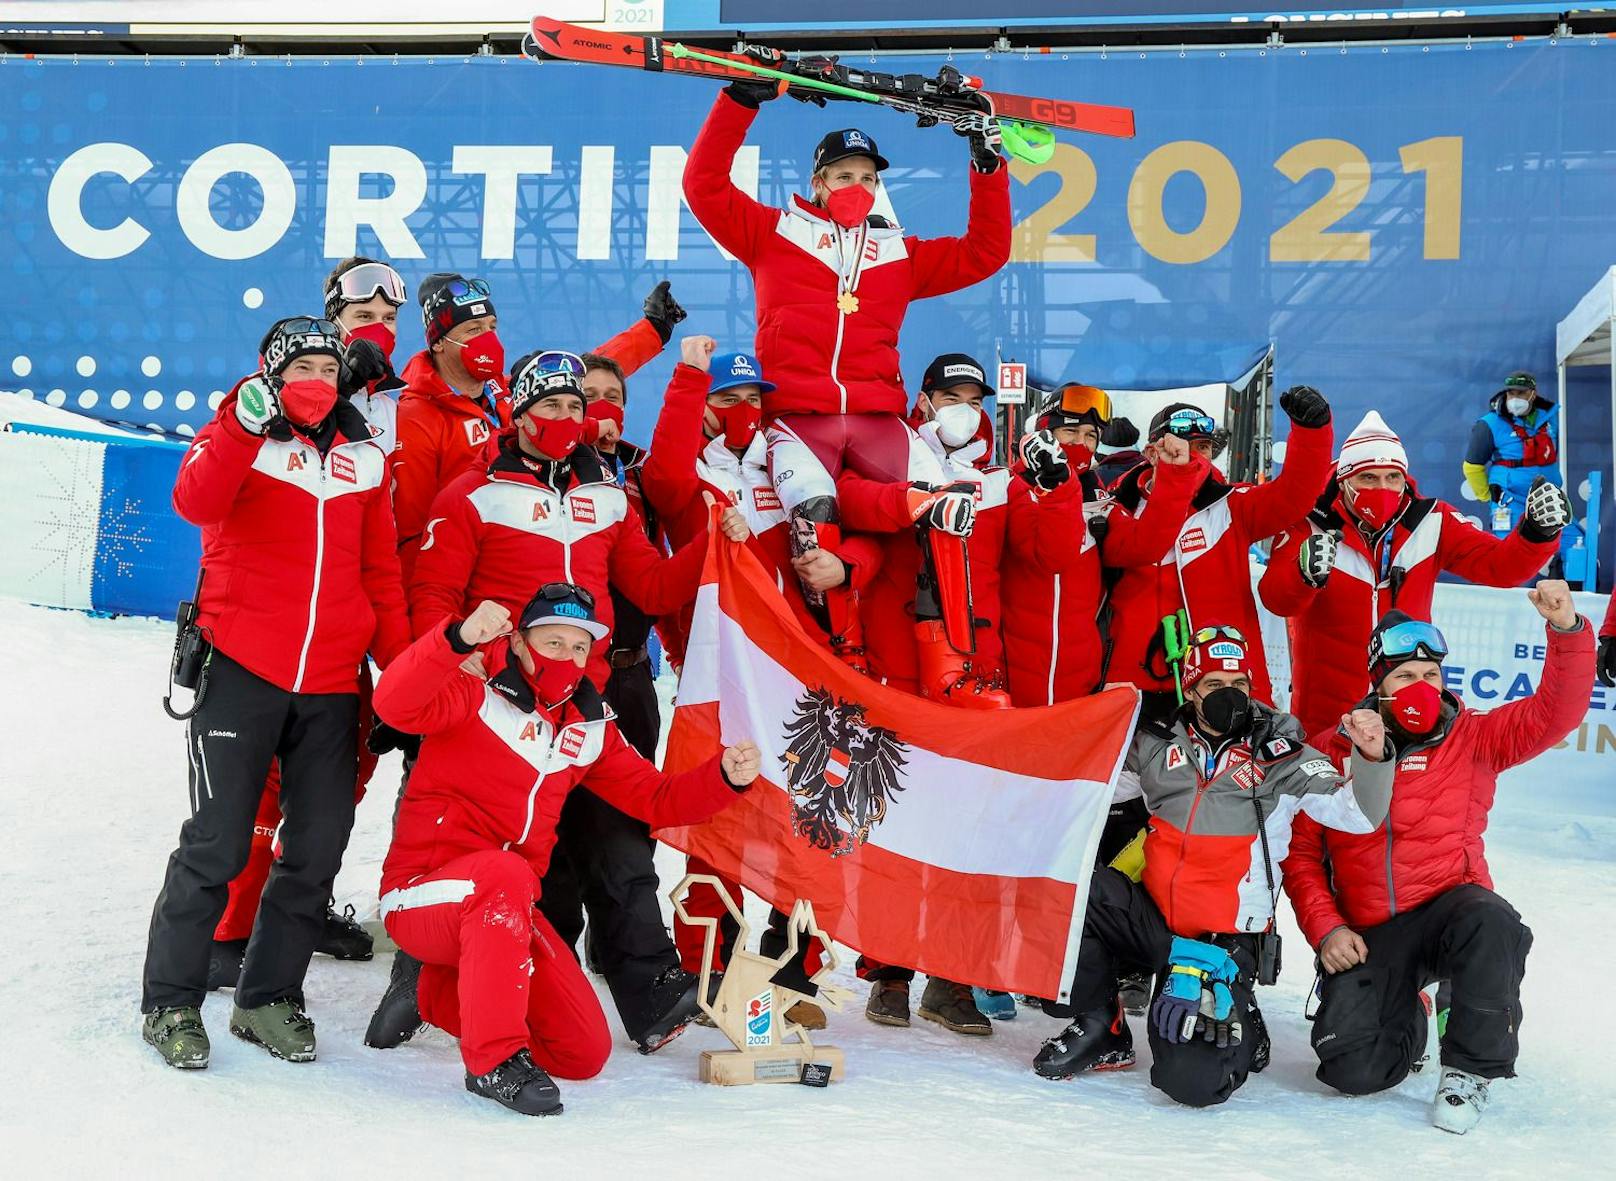 Österreichs Medaillen-Helden bei der Ski-WM 2021 in Cortina zum Durchklicken!